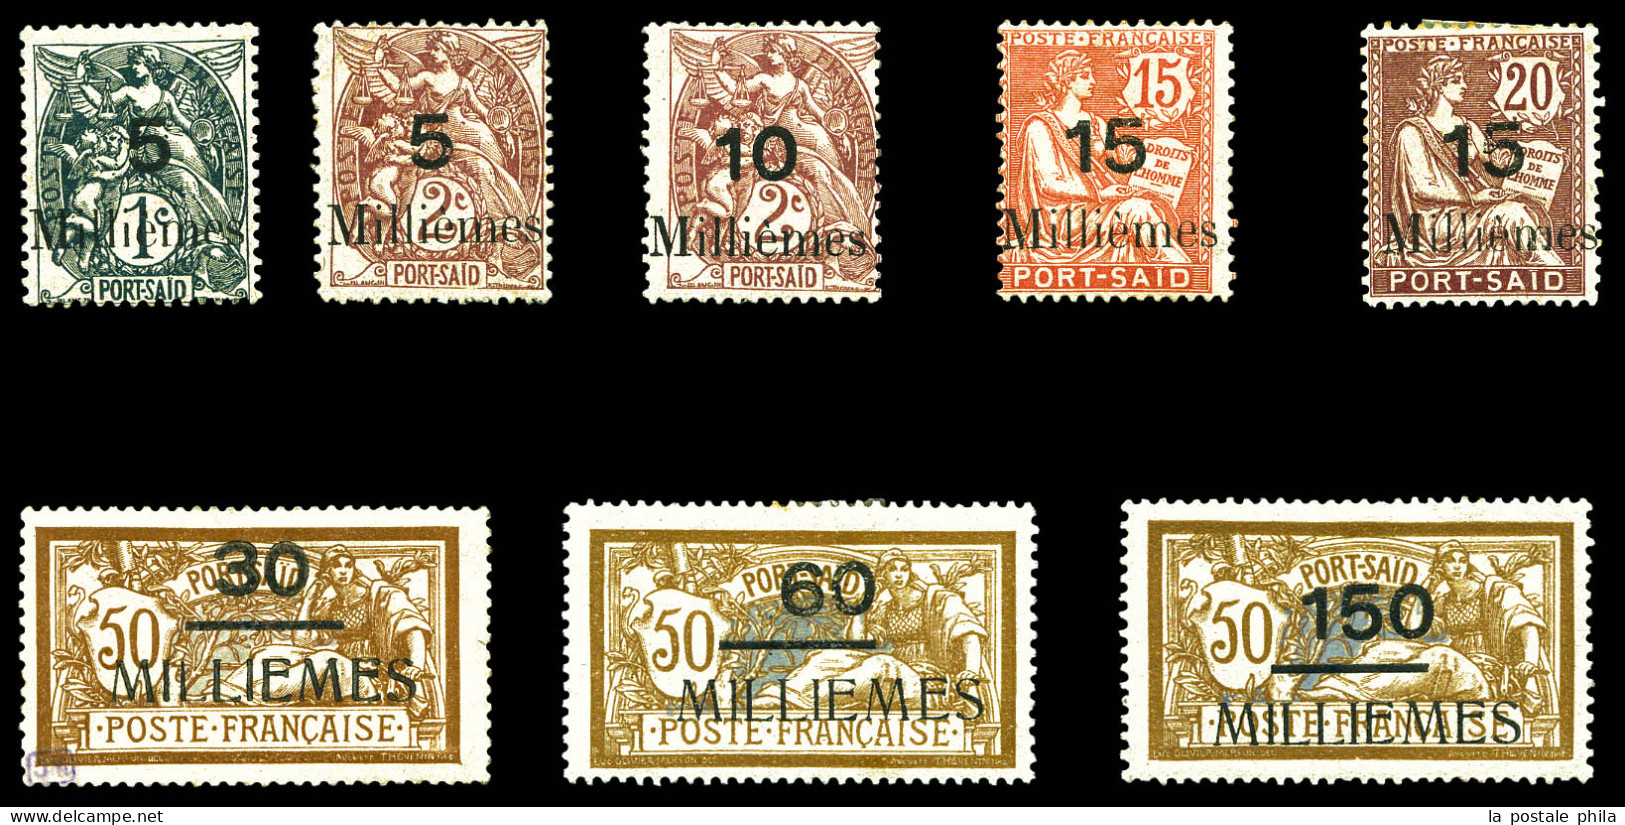 N°61/68, Série Complète (n°61 (*)), Les 8 Valeurs TB (certificat)  Qualité: *  Cote: 1565 Euros - Unused Stamps